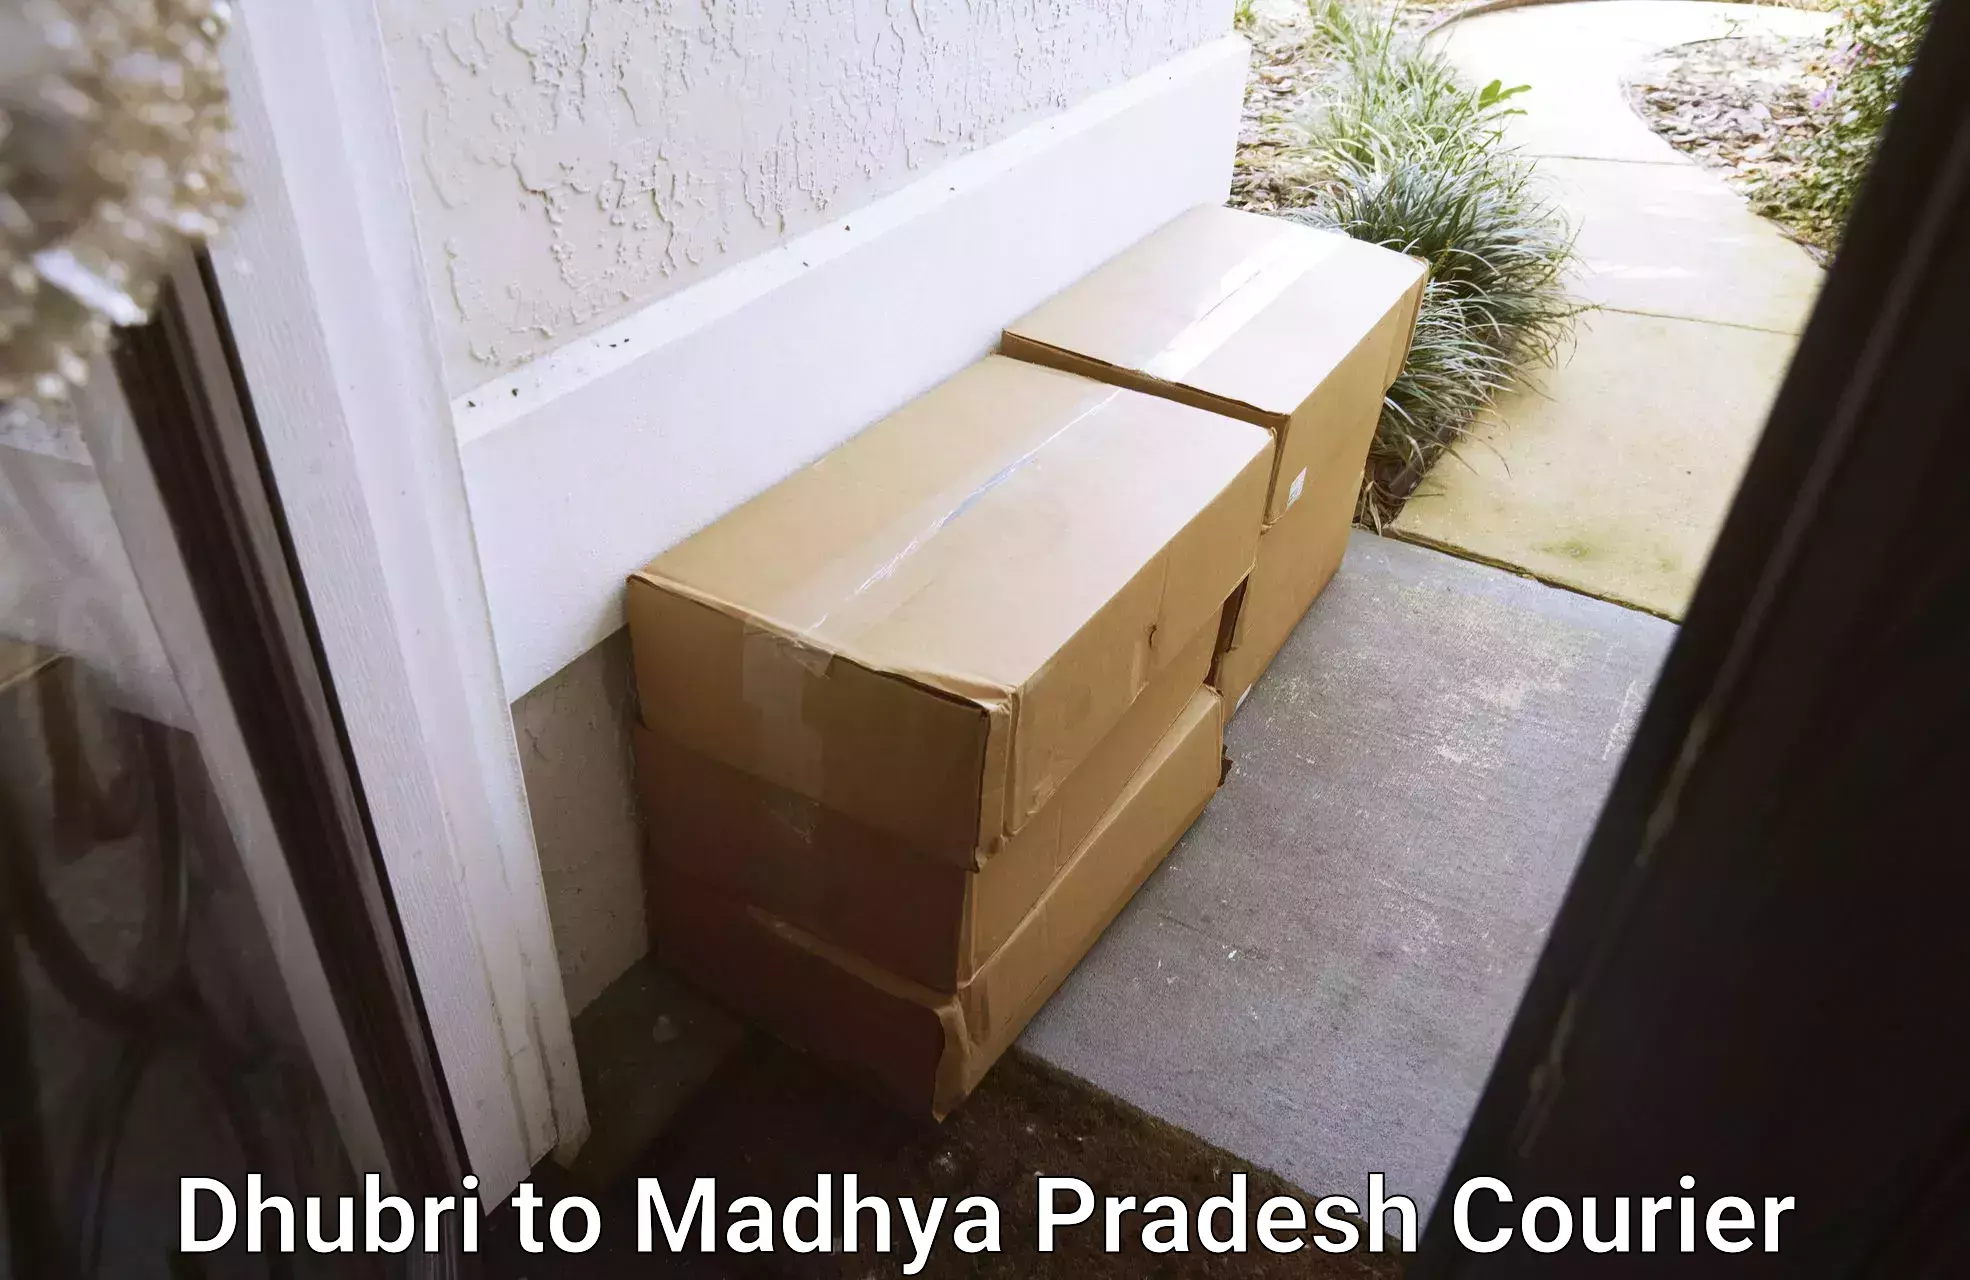 High-capacity parcel service Dhubri to Dewas